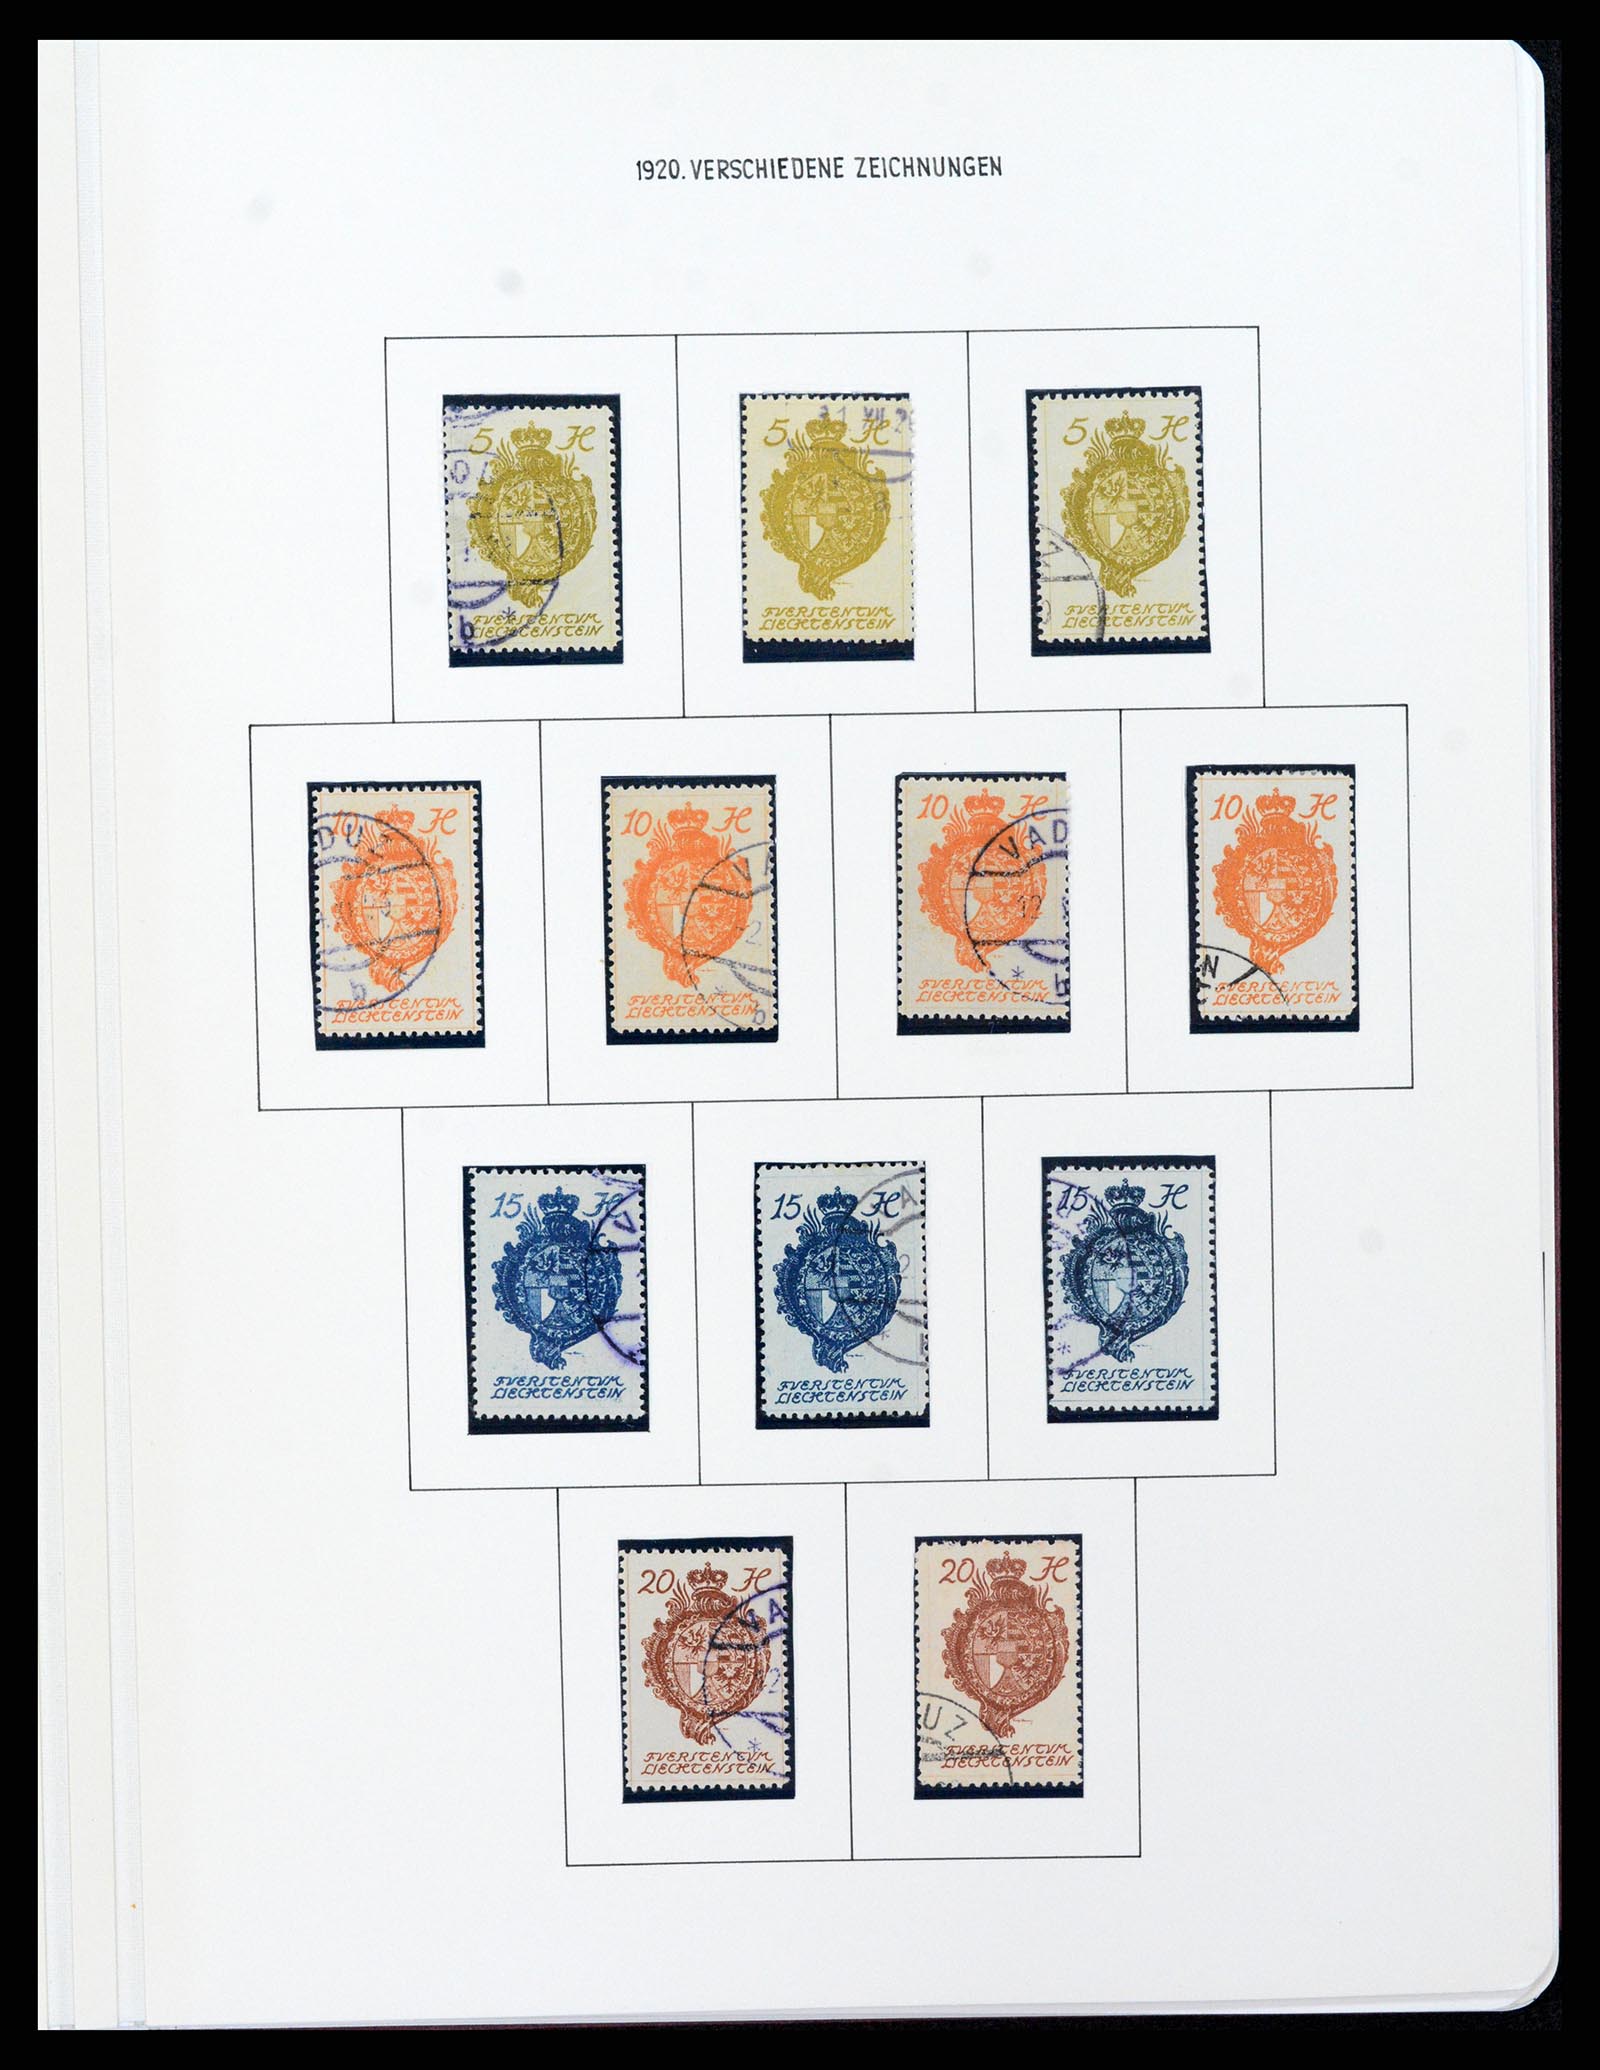 37150 0095 - Stamp collection 37150 Liechtenstein supercollection 1912-1962.